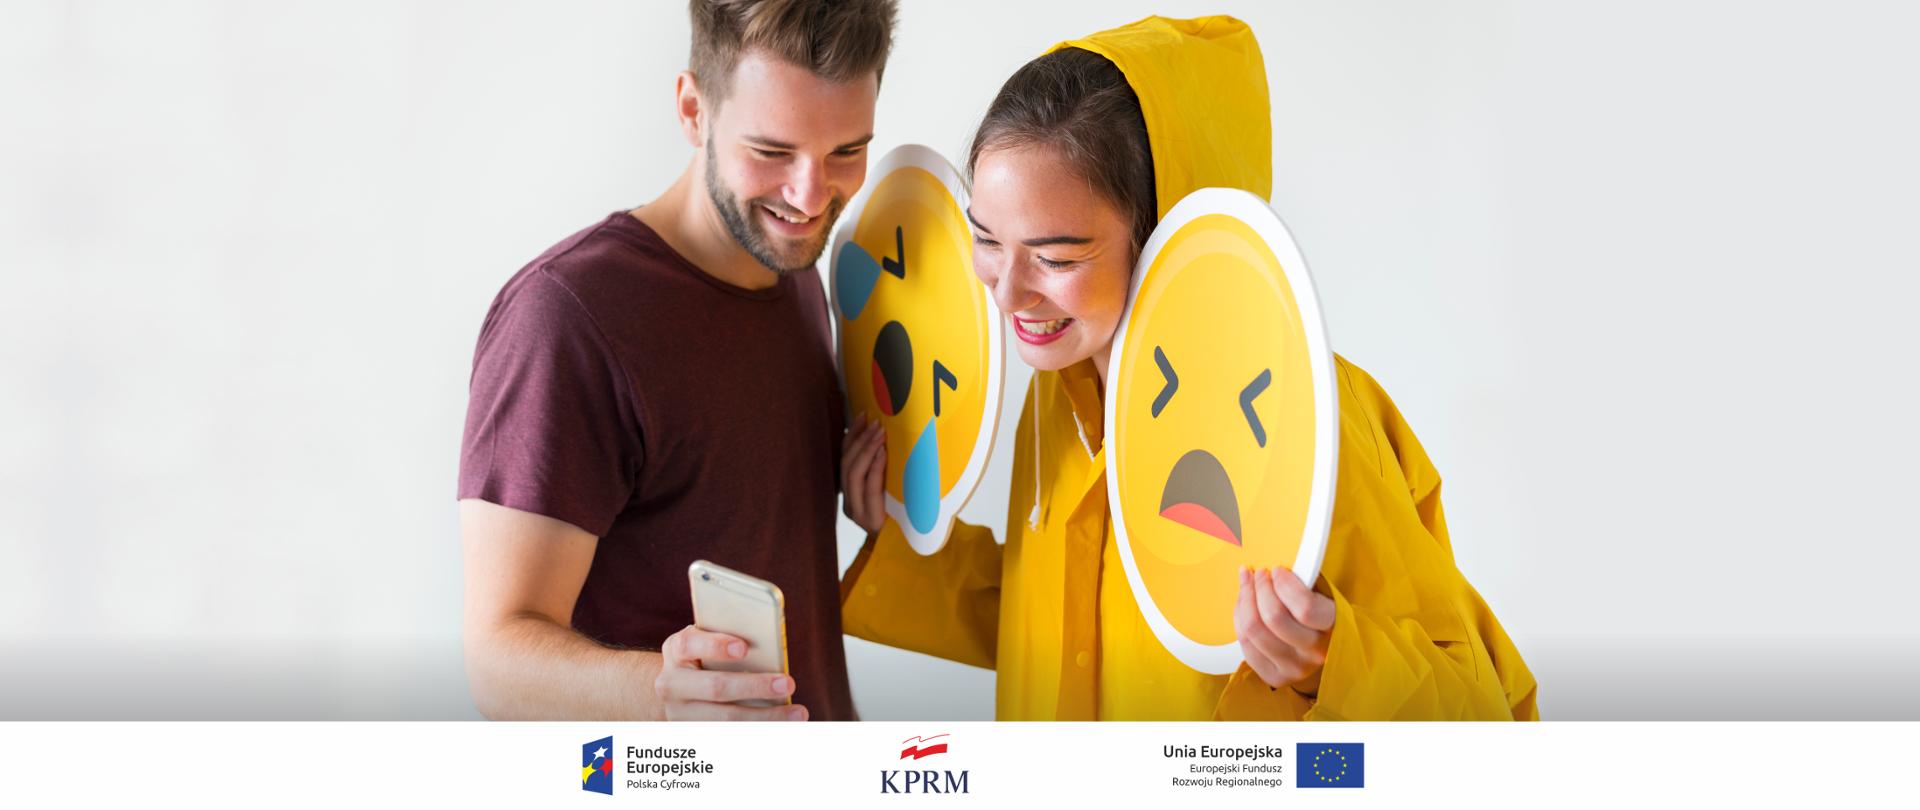 Dwie młode osoby kobieta i mężczyzna. Kobieta w żółtym sztormiaku trzyma w dłoniach (dwa) żółte emotikony (zapłakana buzia i smutna buzia). Uśmiechnięta kobieta patrzy w smartfoma trzymanego przez mężczyznę.